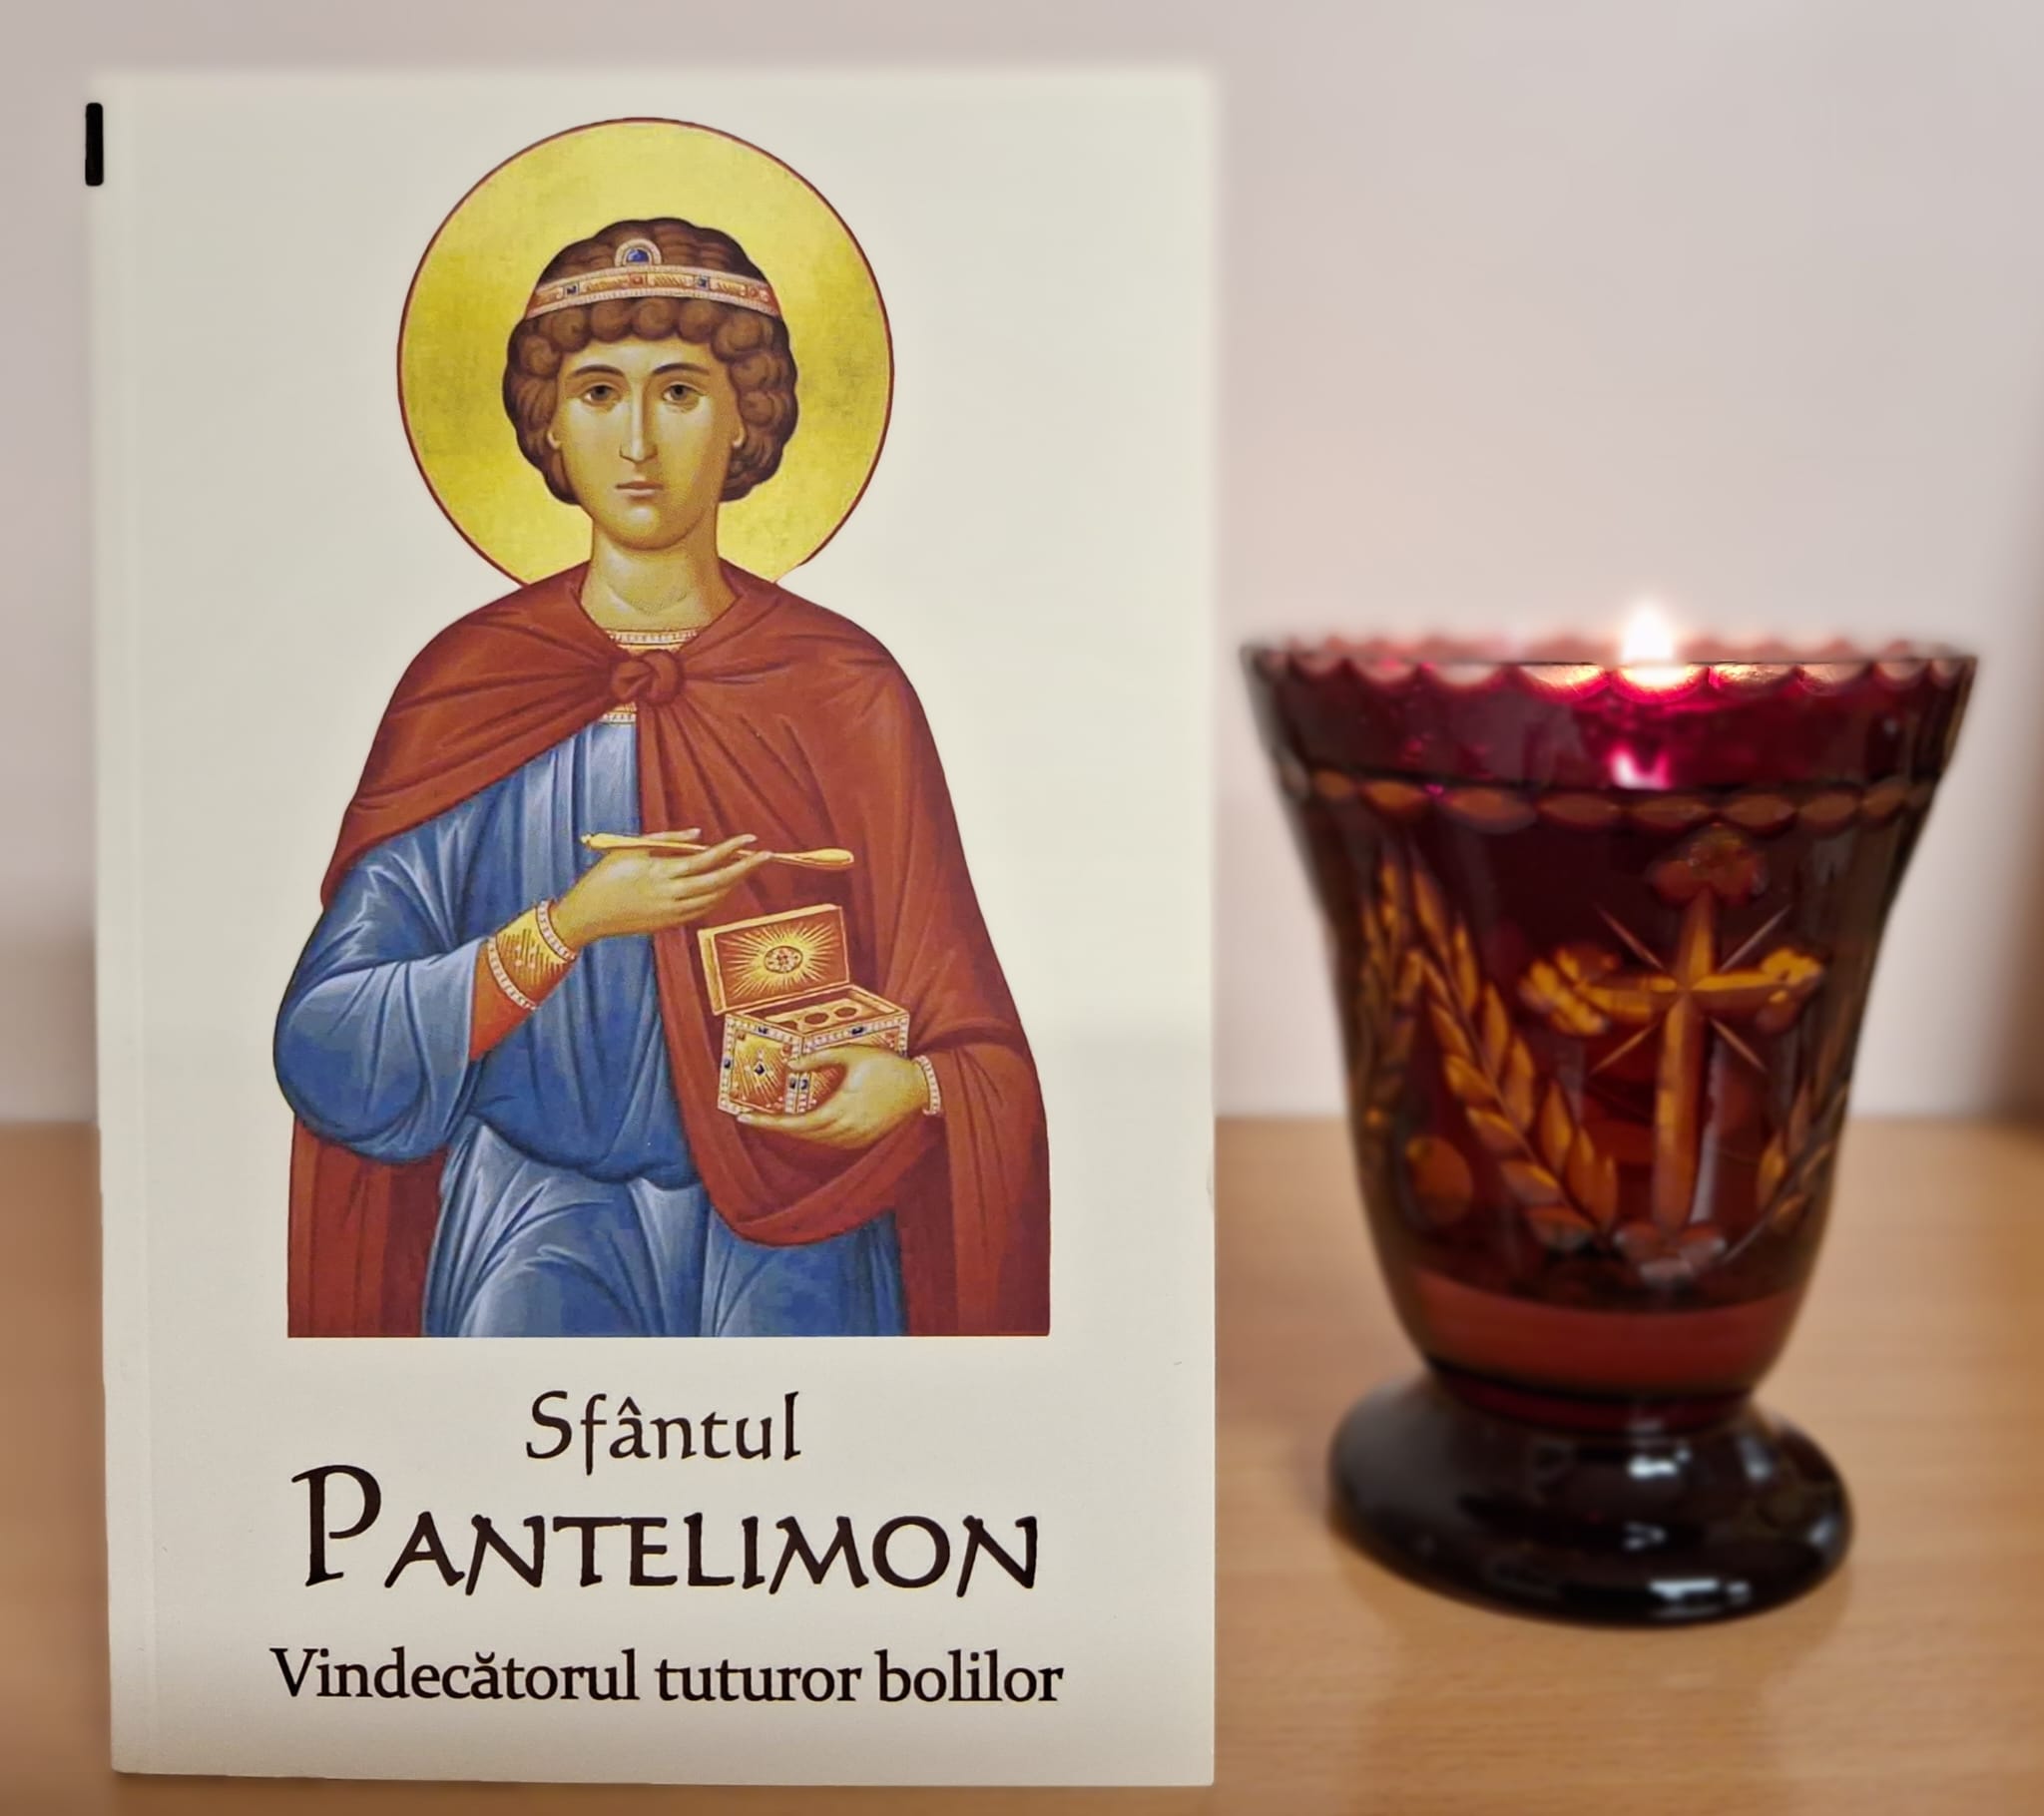 Sfantul Pantelimon – Vindecatorul tuturor bolilor